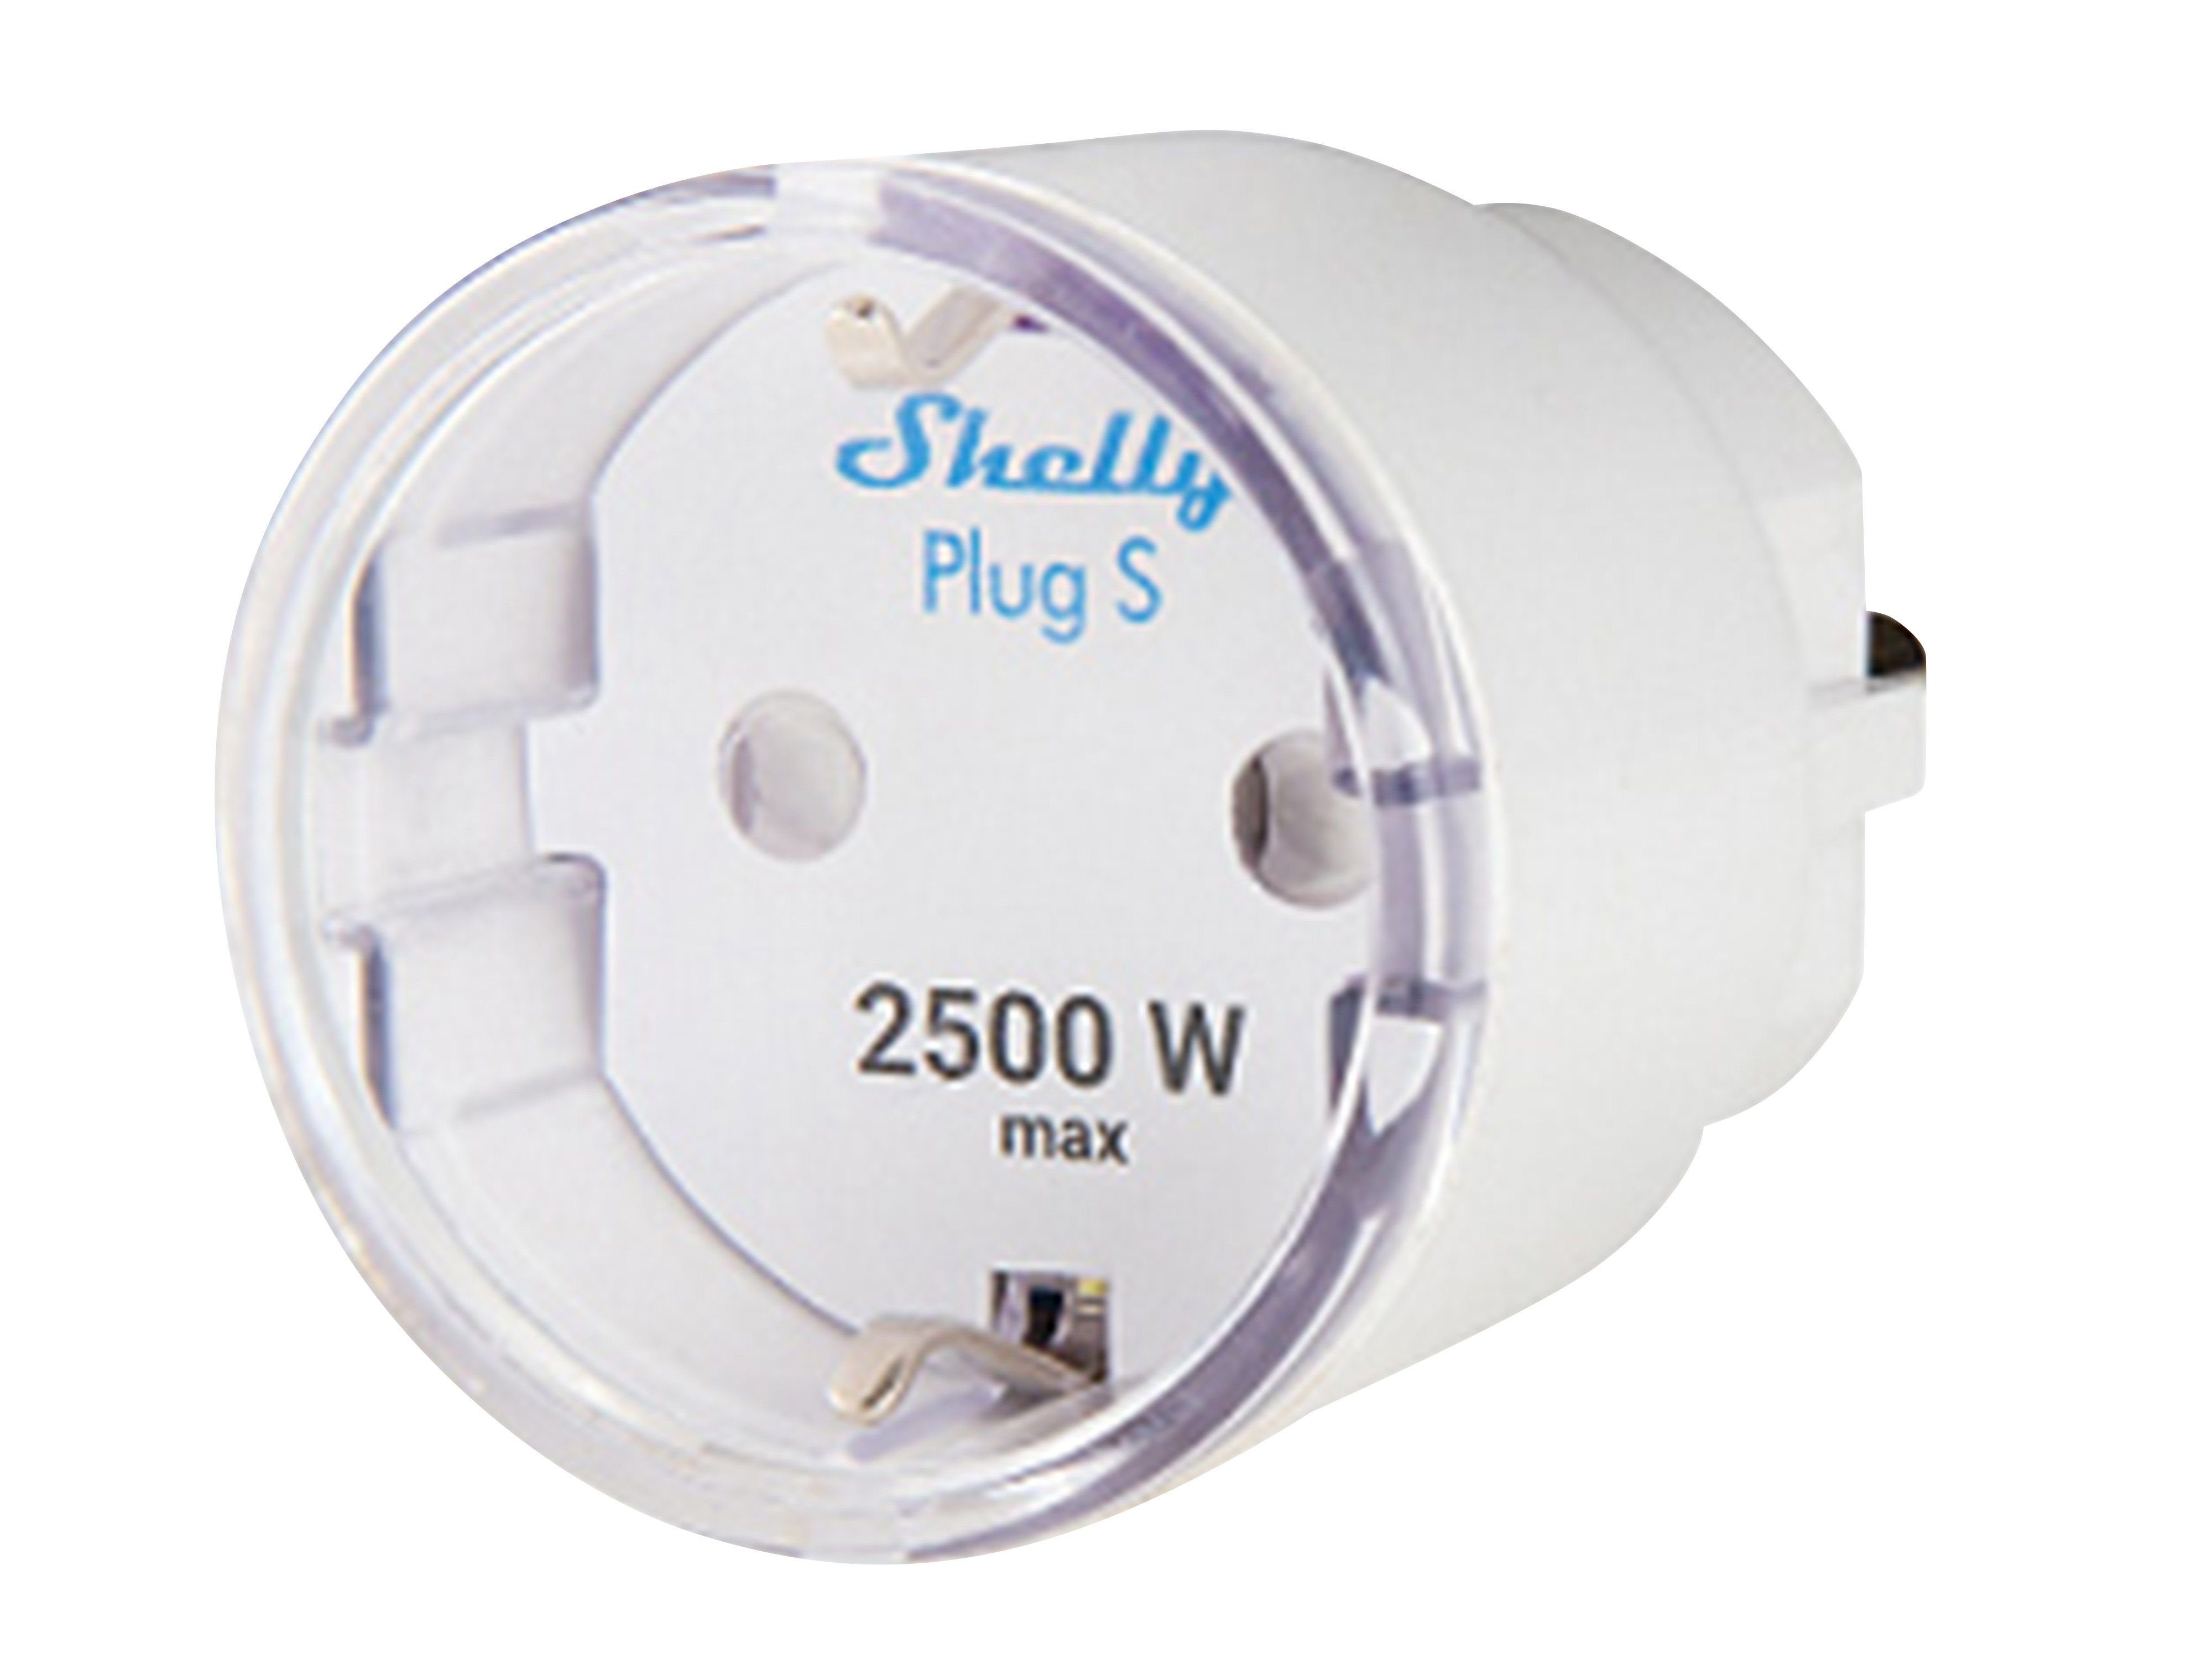 Shelly WLAN-Steckdose SHELLY 12 A S, Plug Plus WLAN-Steckdose